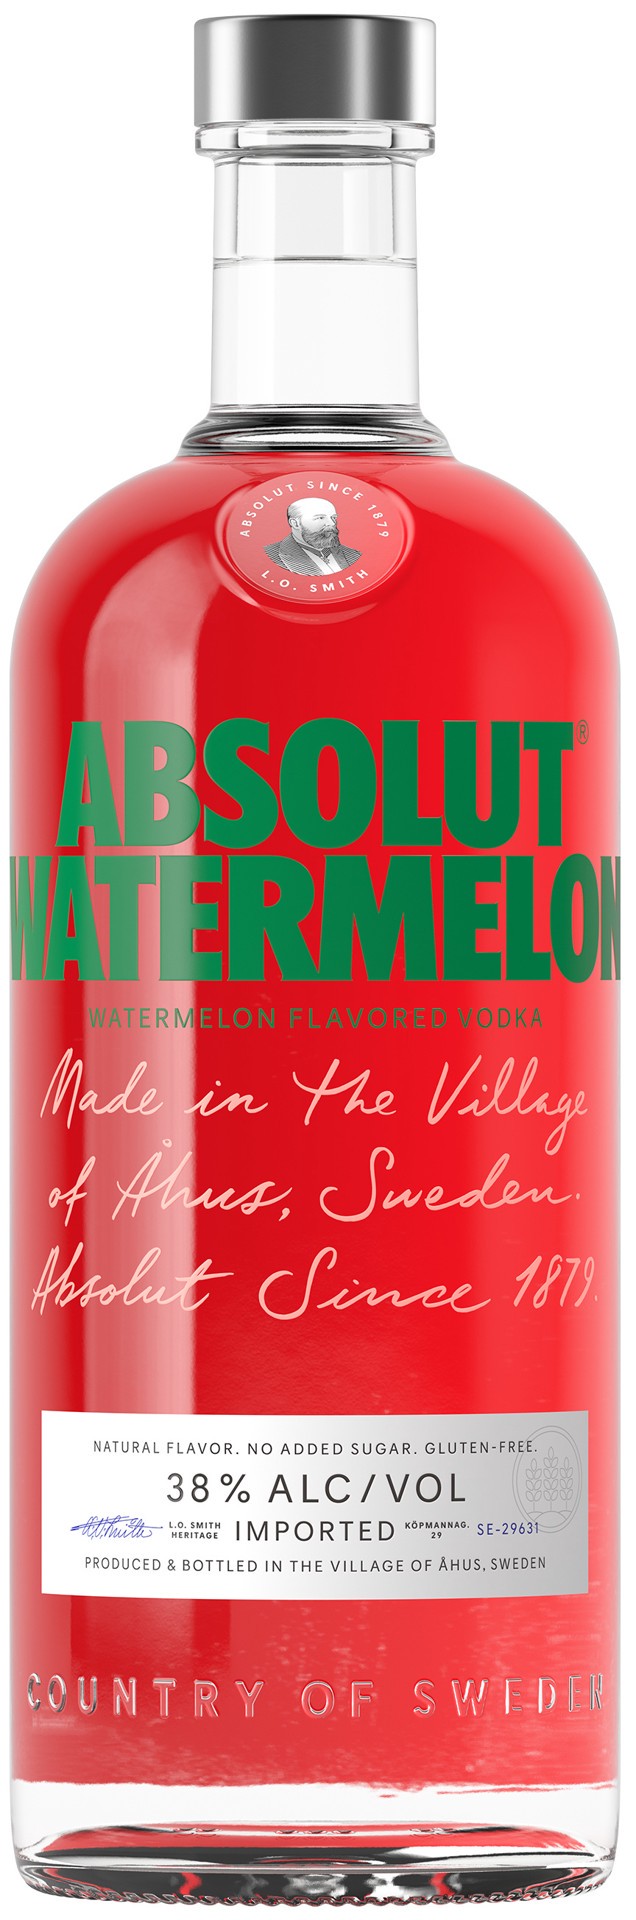 slide 1 of 9, Absolut Watermelon Flavored Vodka, 1 L Bottle, 38% ABV, 1 liter